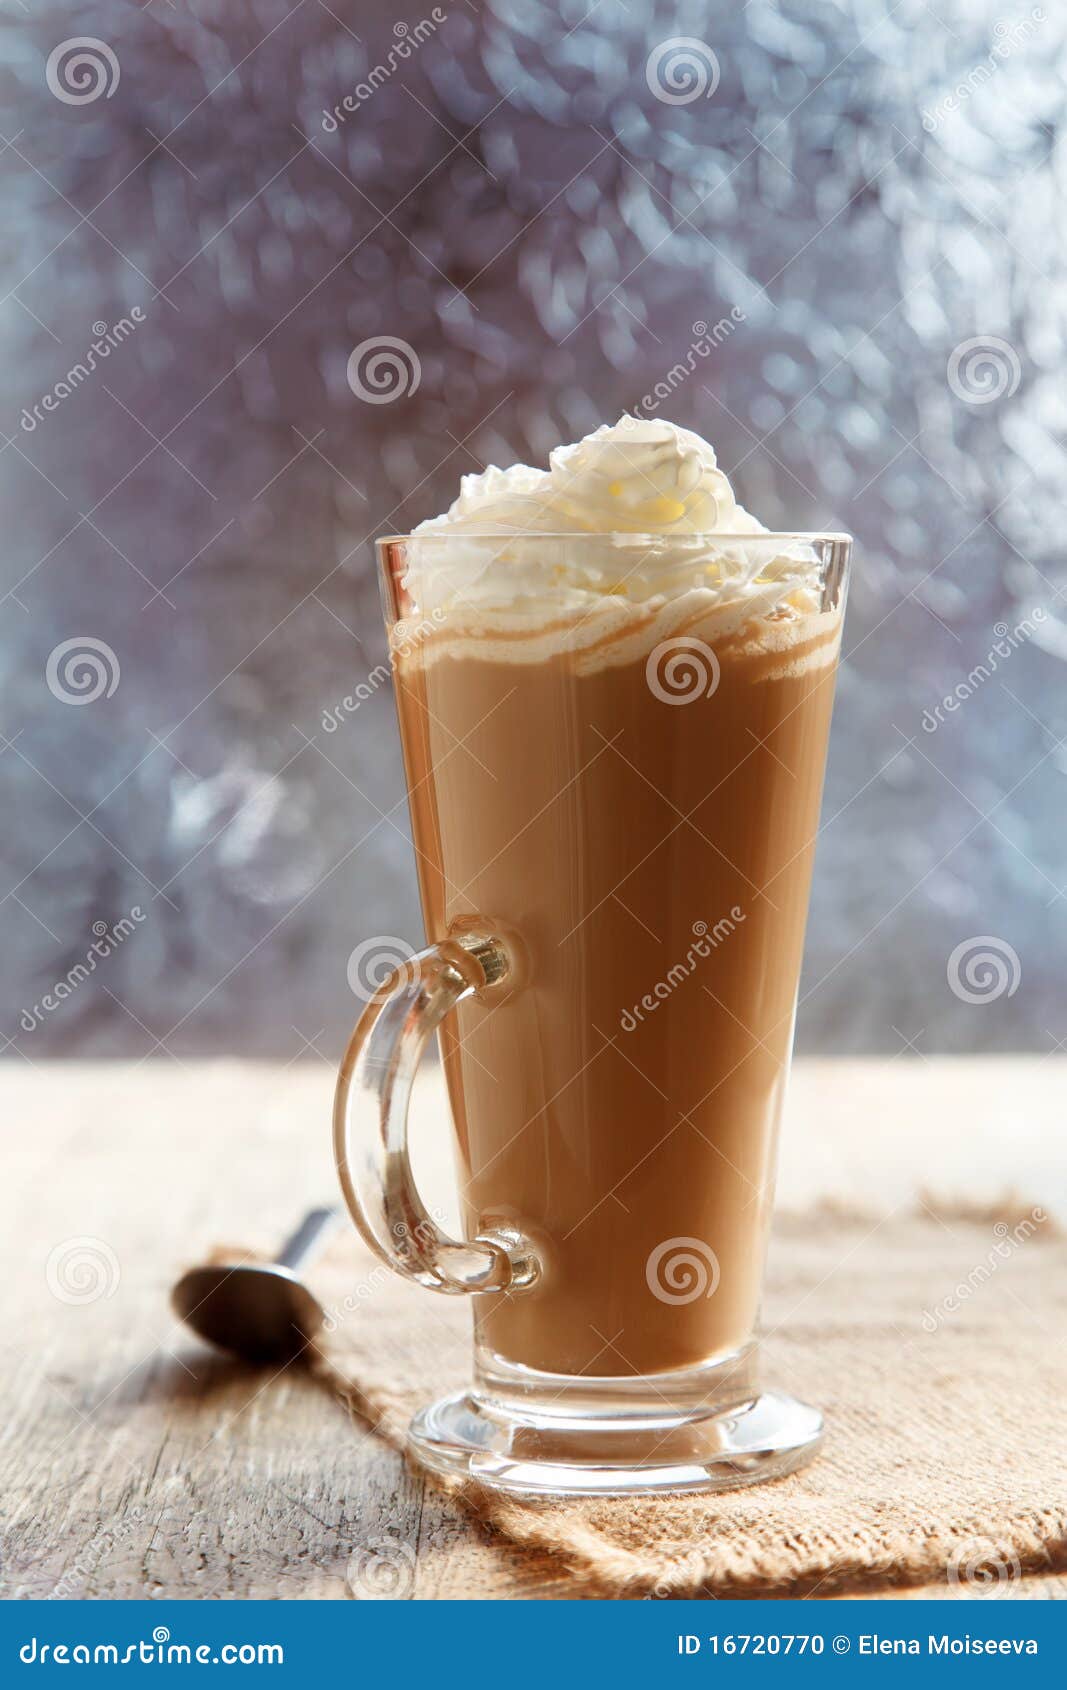 coffee latte macchiato with cream